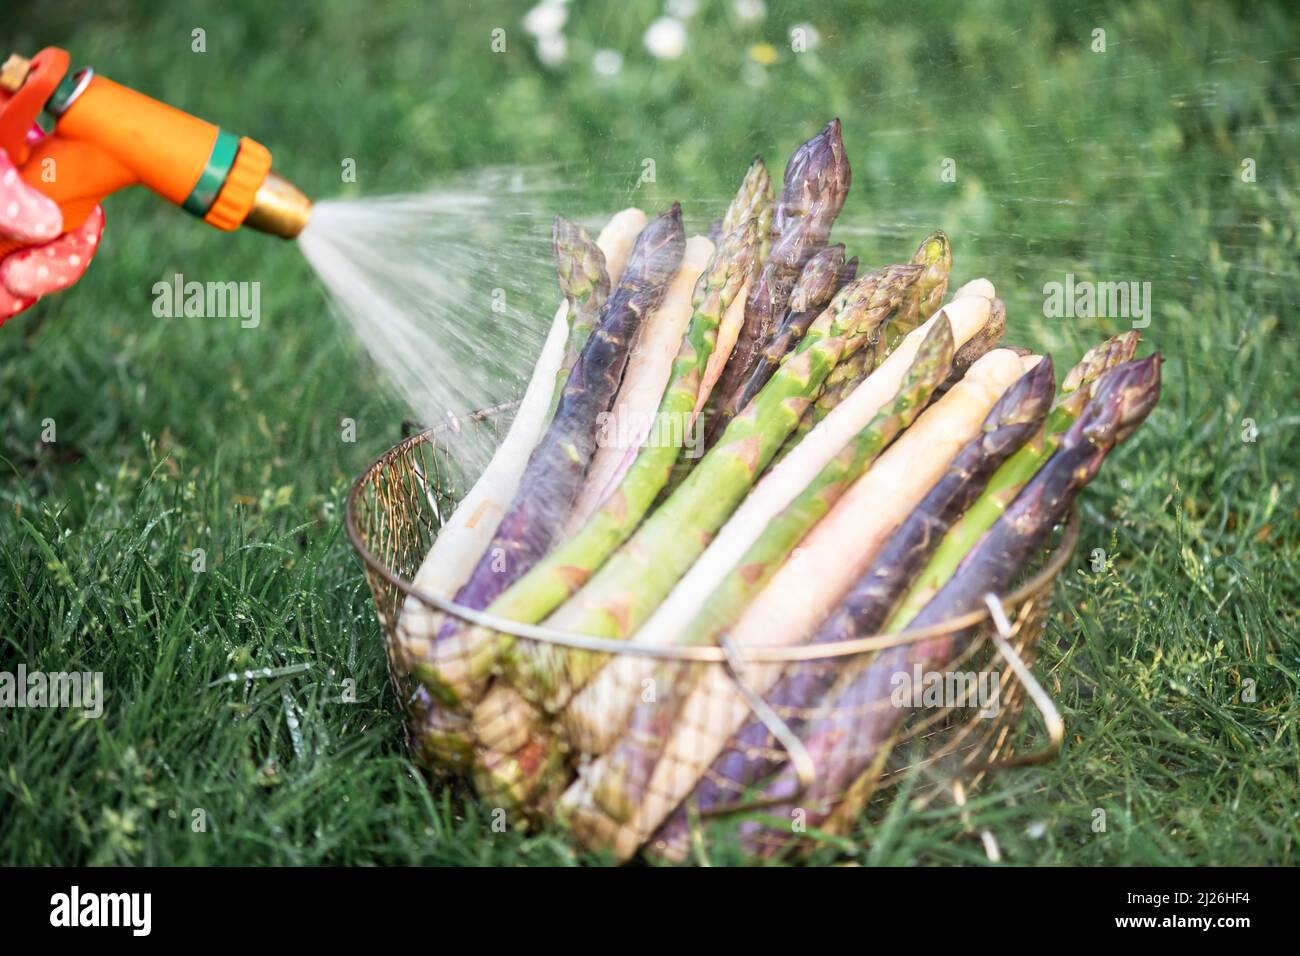 Bauer wäscht Spargelsprossen mit Gartenschlauch. Frische grüne, violette und weiße Spargelsprossen. Food-Fotografie Stockfoto